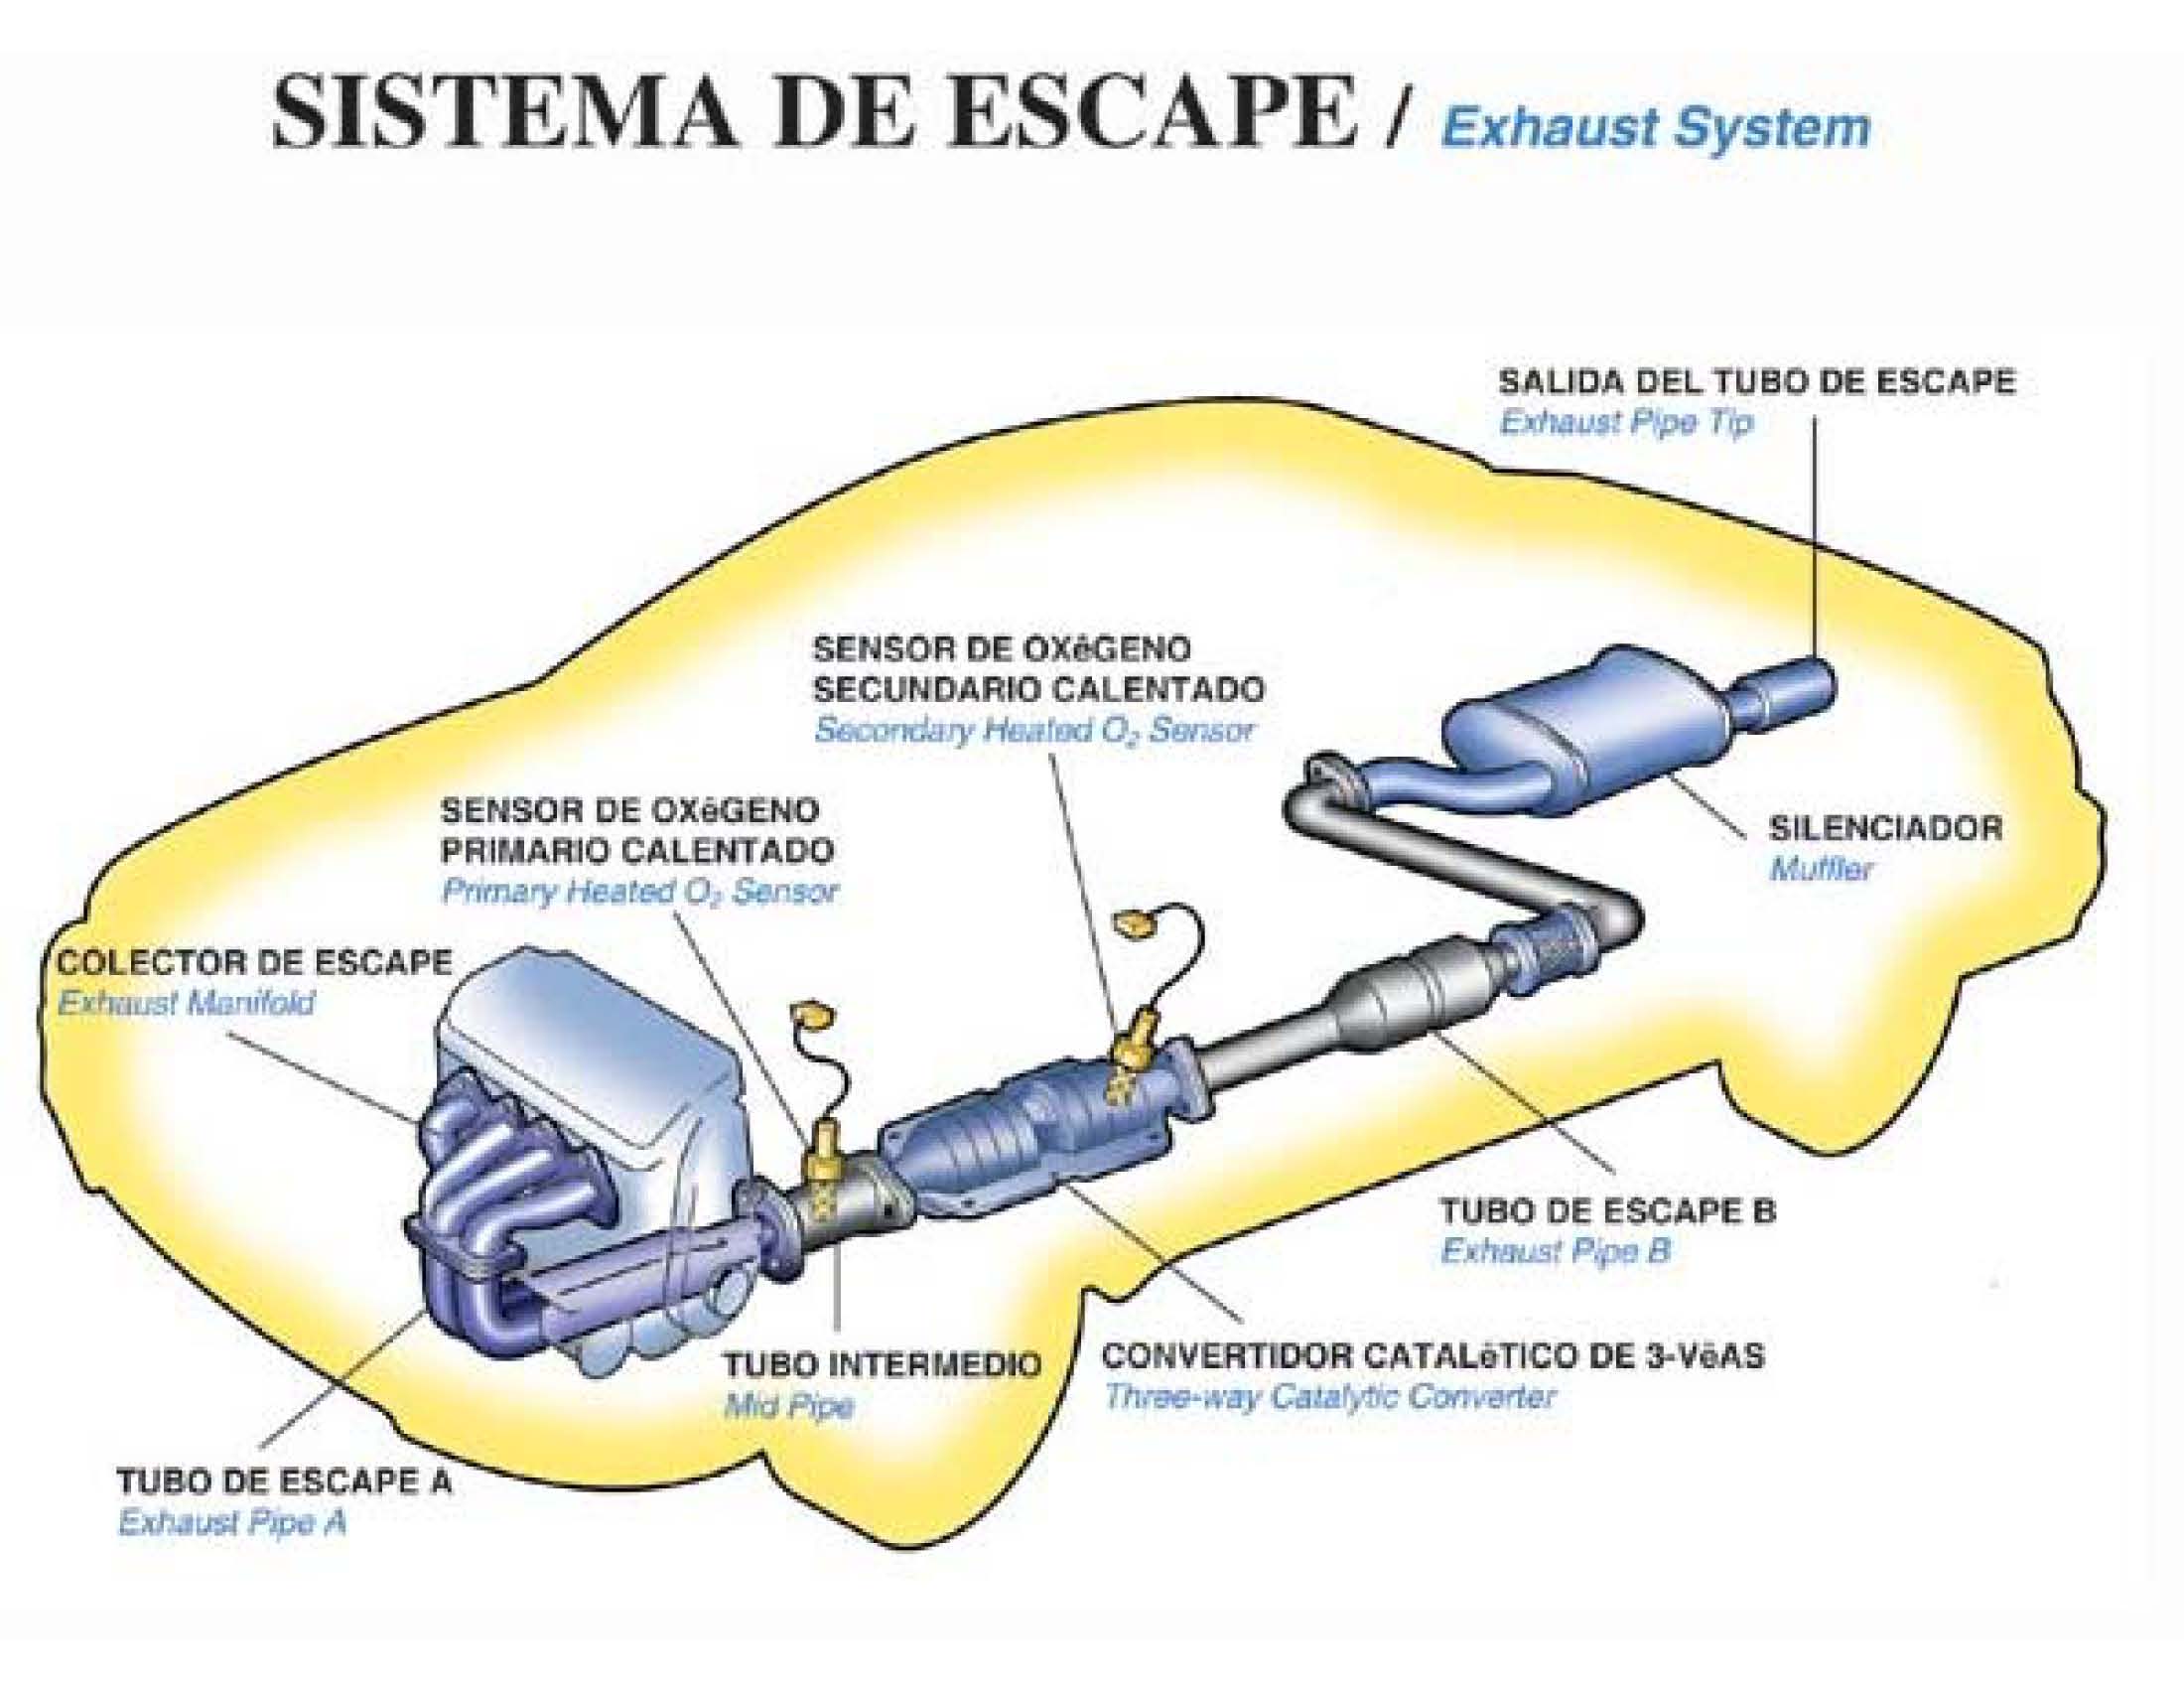 Cuáles son las partes que componen el sistema de escape?